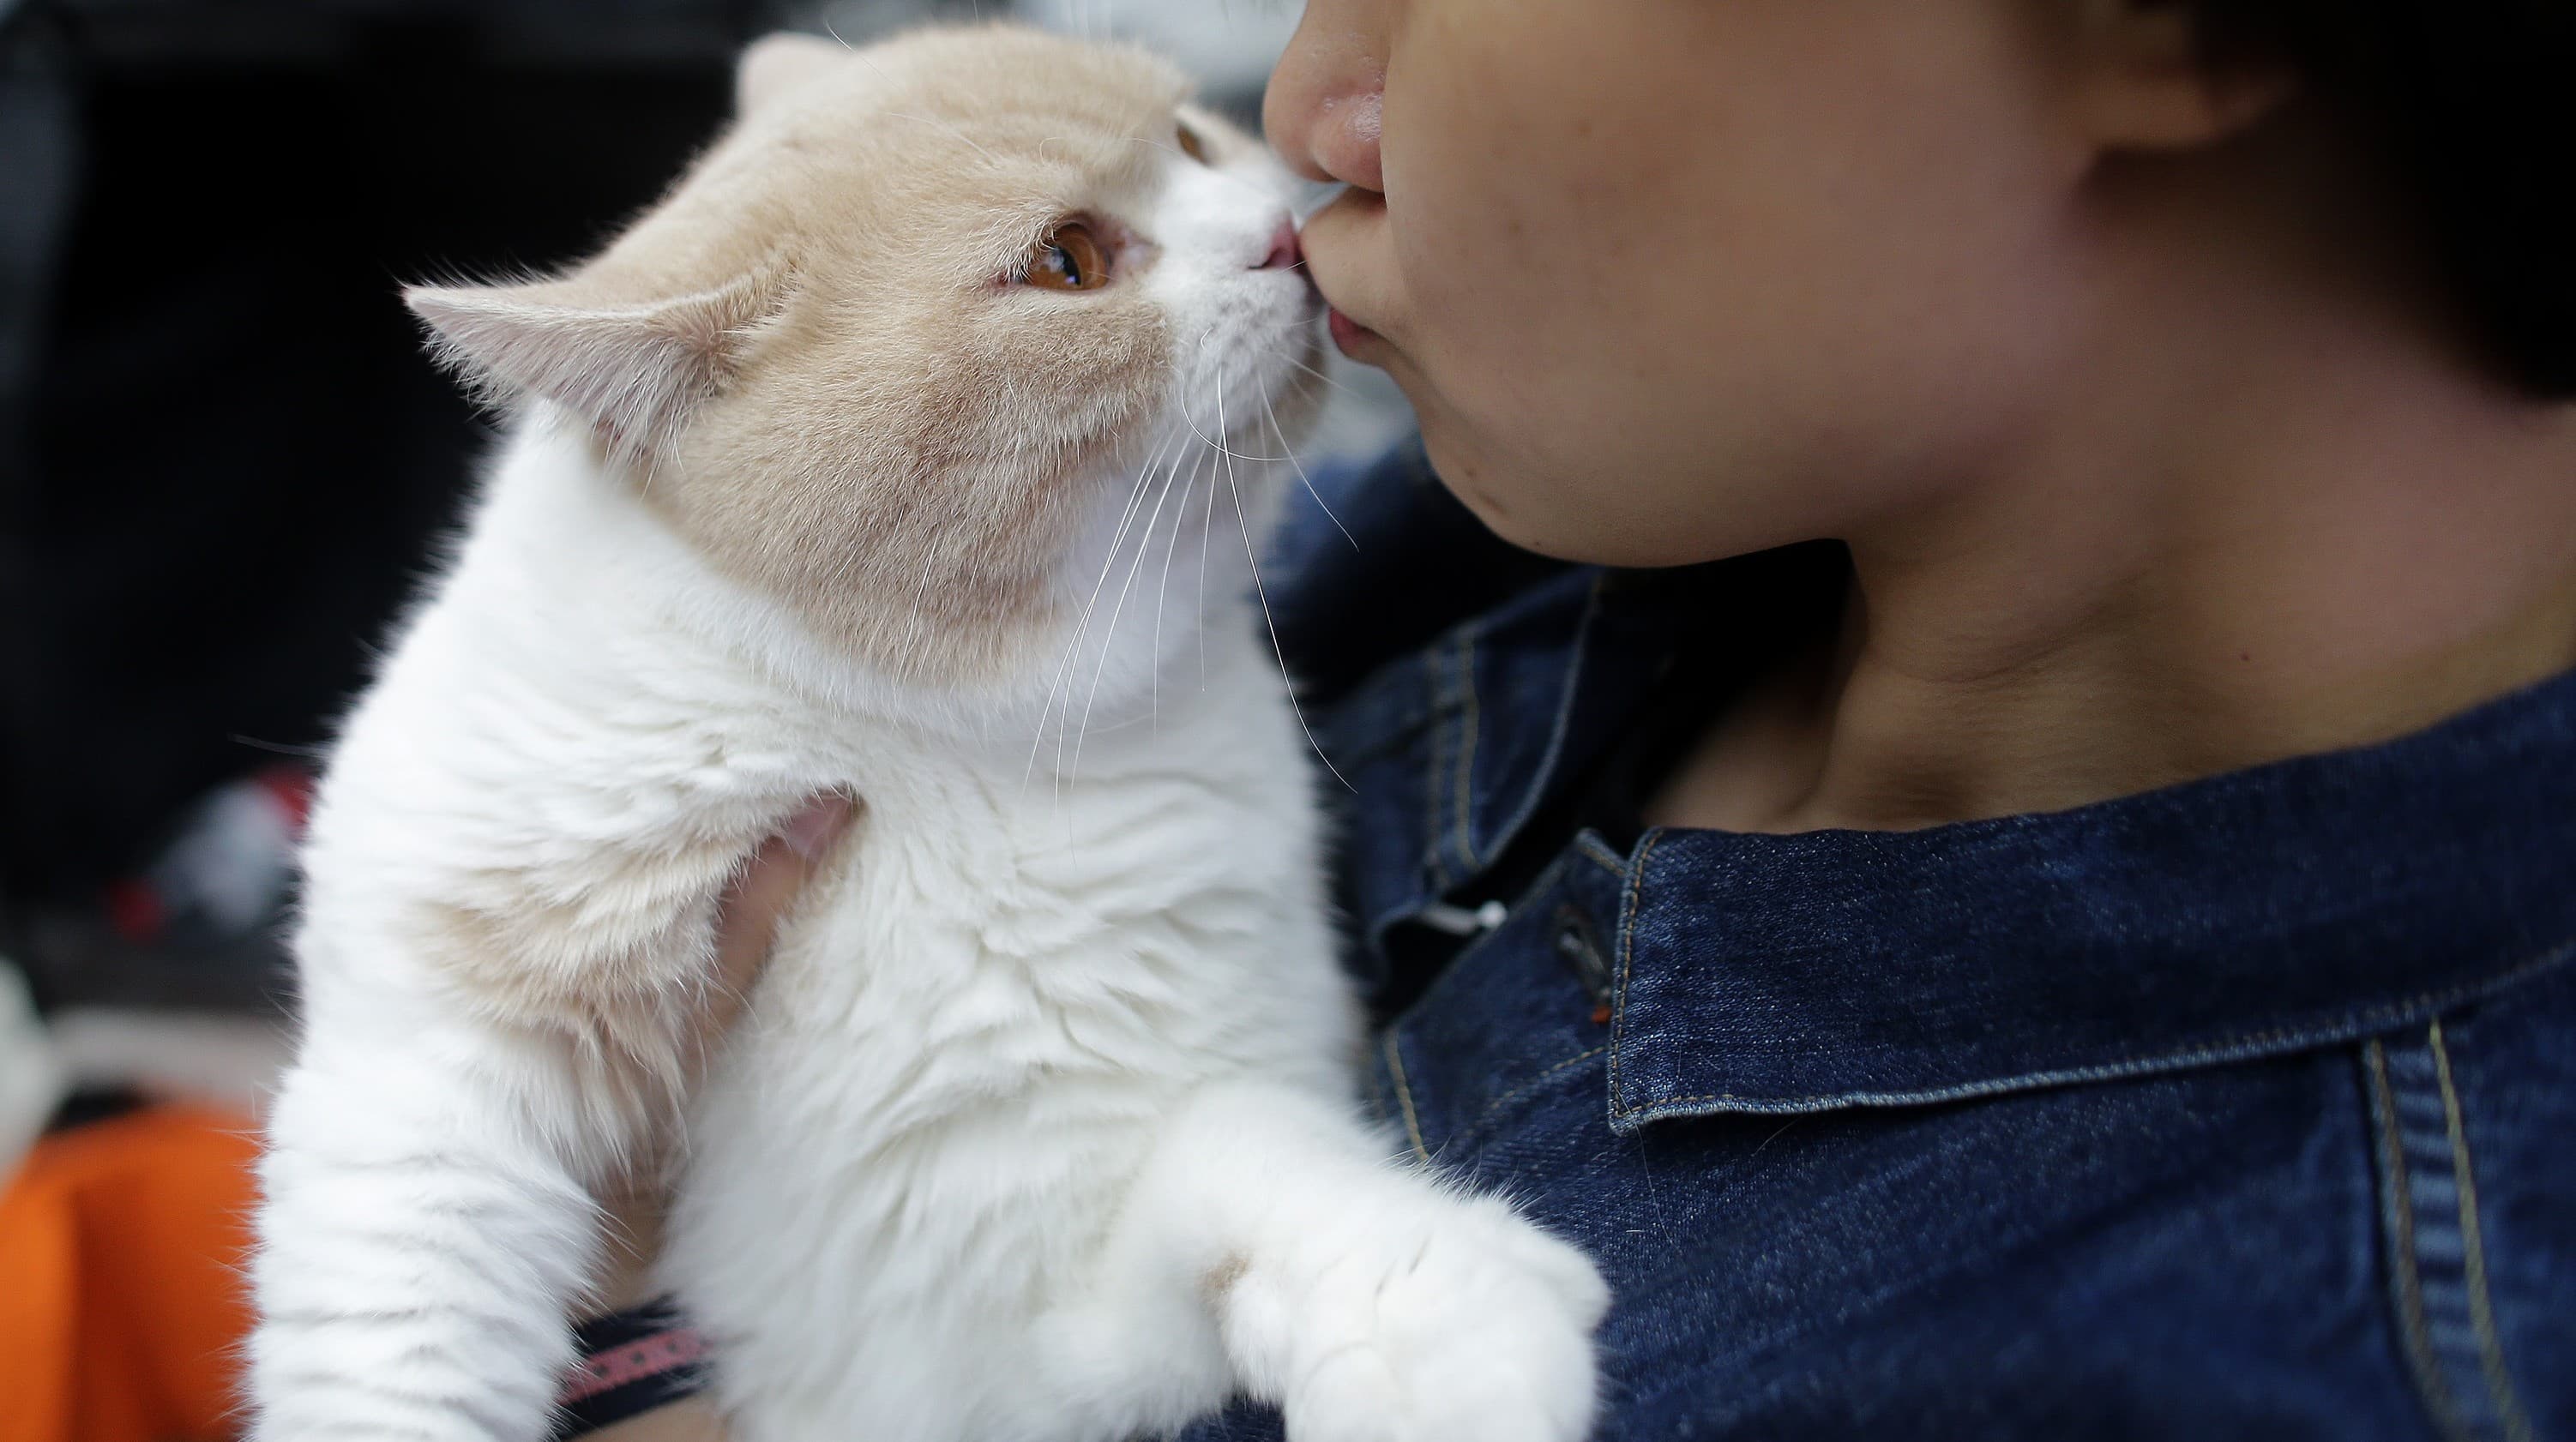 Gatos são apegados, sim! Estudo aponta que felinos entendem quando humanos  falam diretamente com eles, Ciência